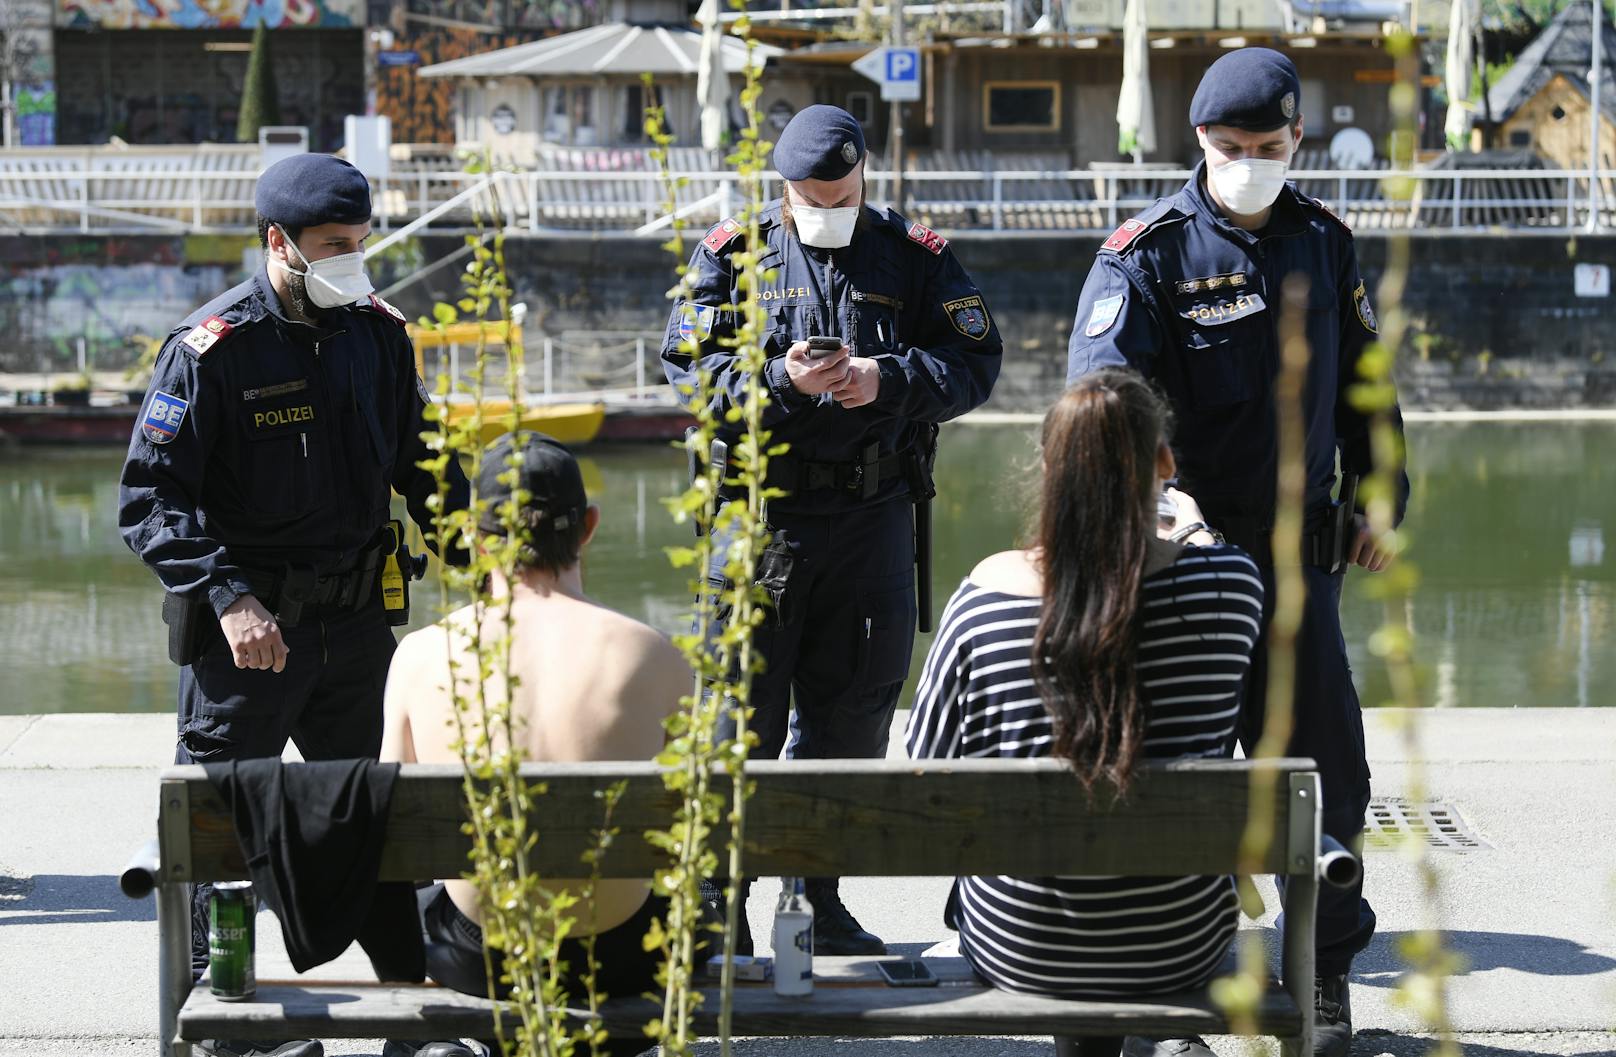 Kontrollen bei Masken und Abständen: Die Corona-Pandemie erweiterte die Aufgaben-Palette der Polizei erheblich.